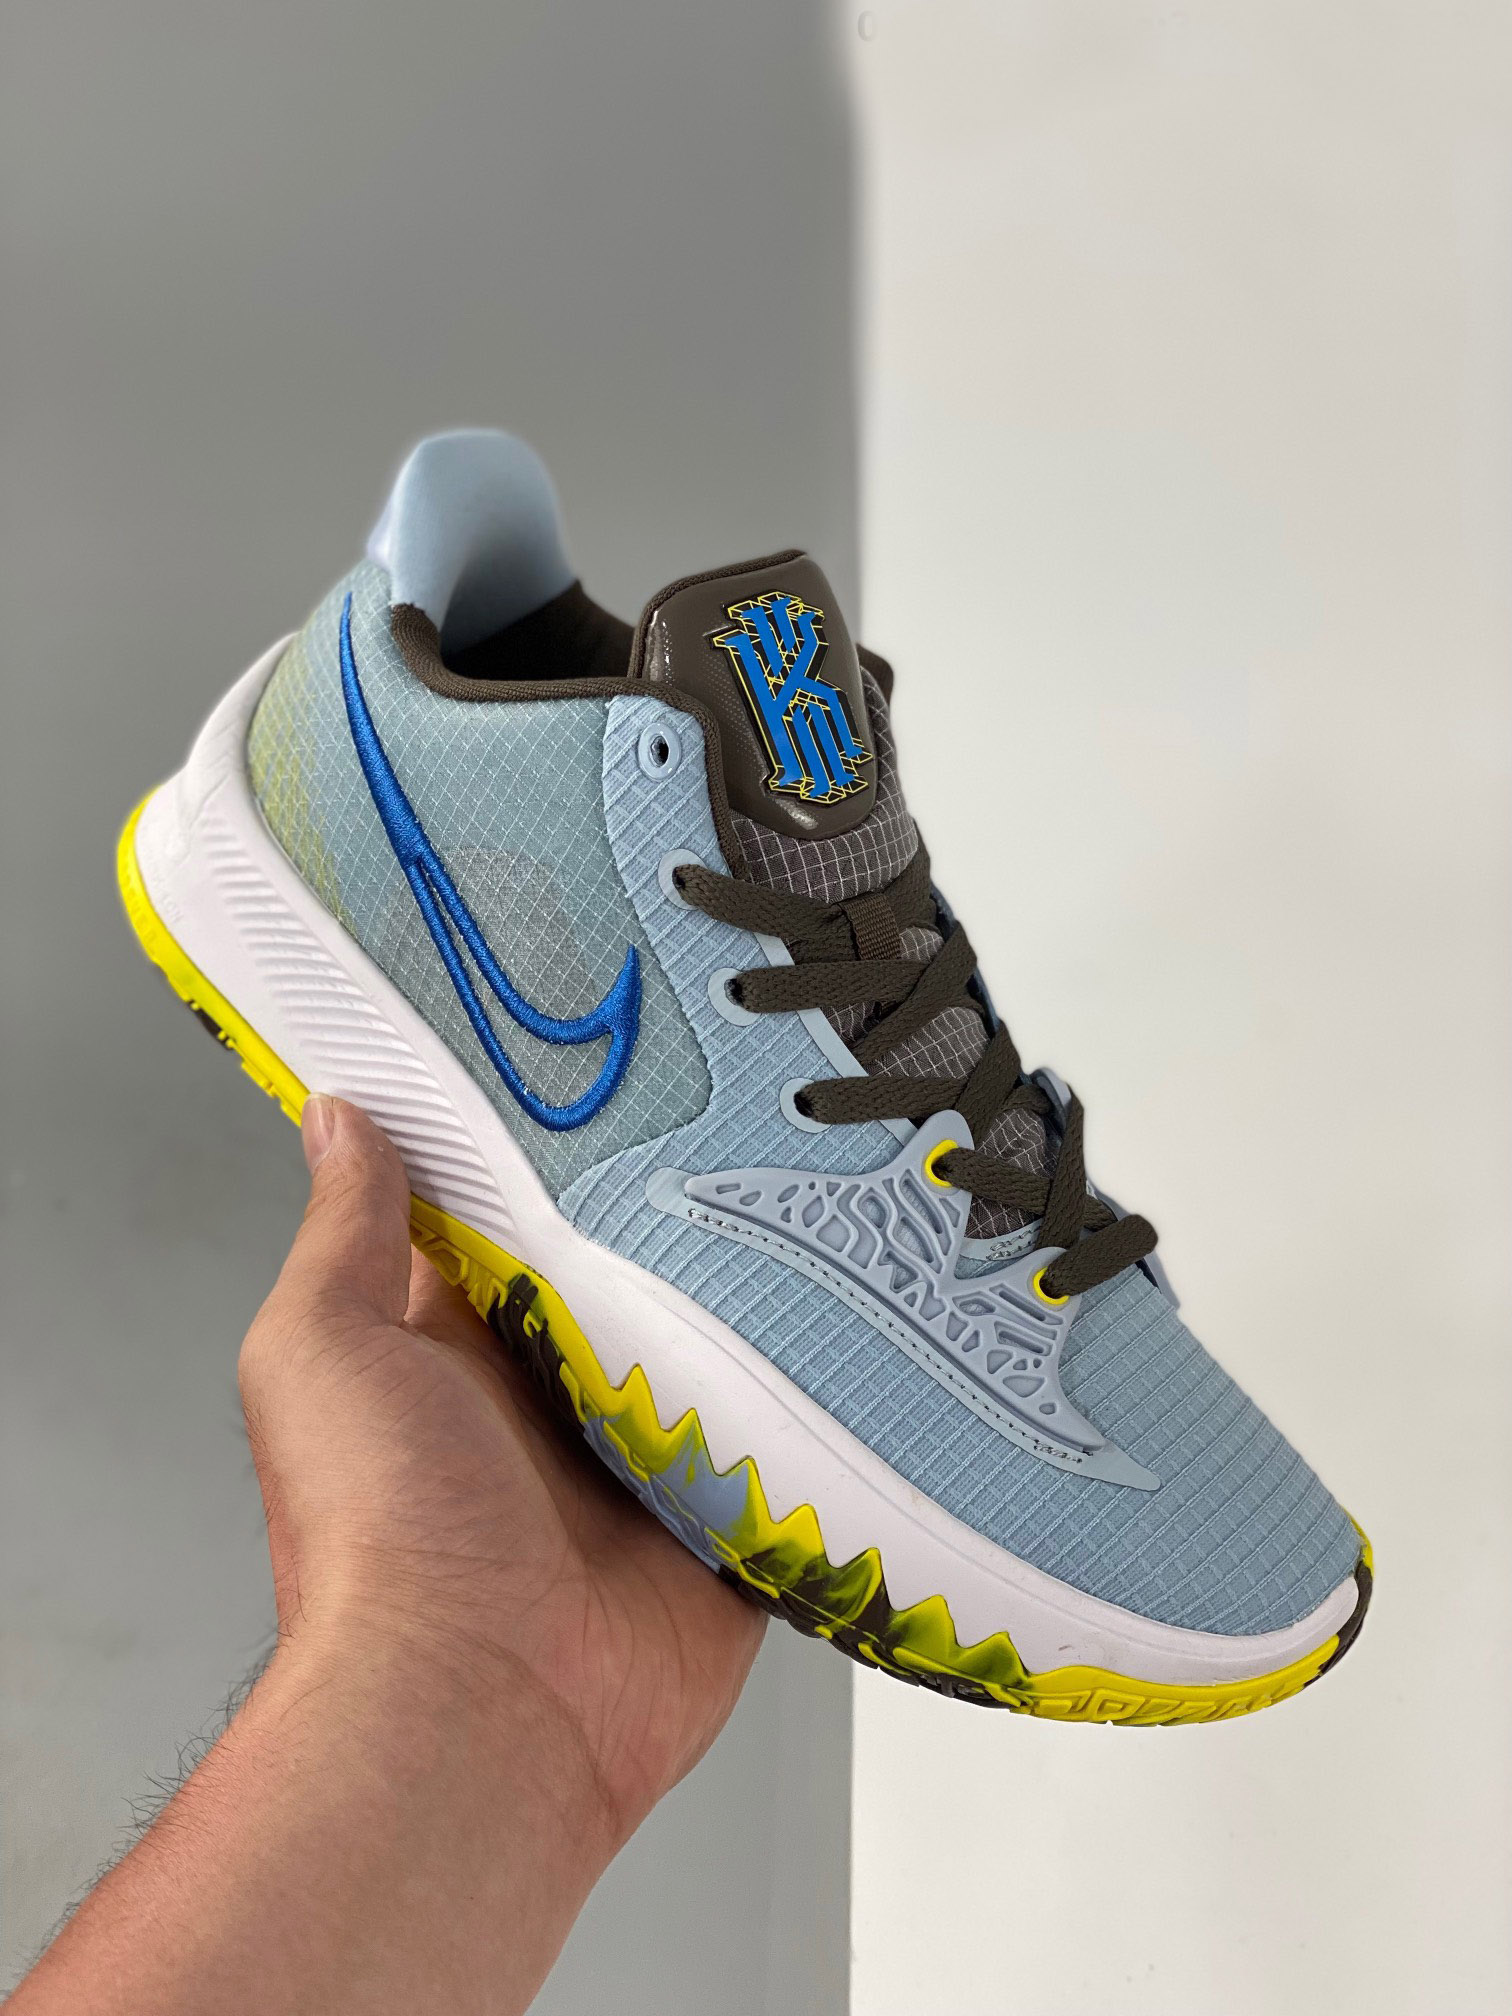 Nike Kyrie 4 'Light Armory Blue' CW3985-400 Shoes